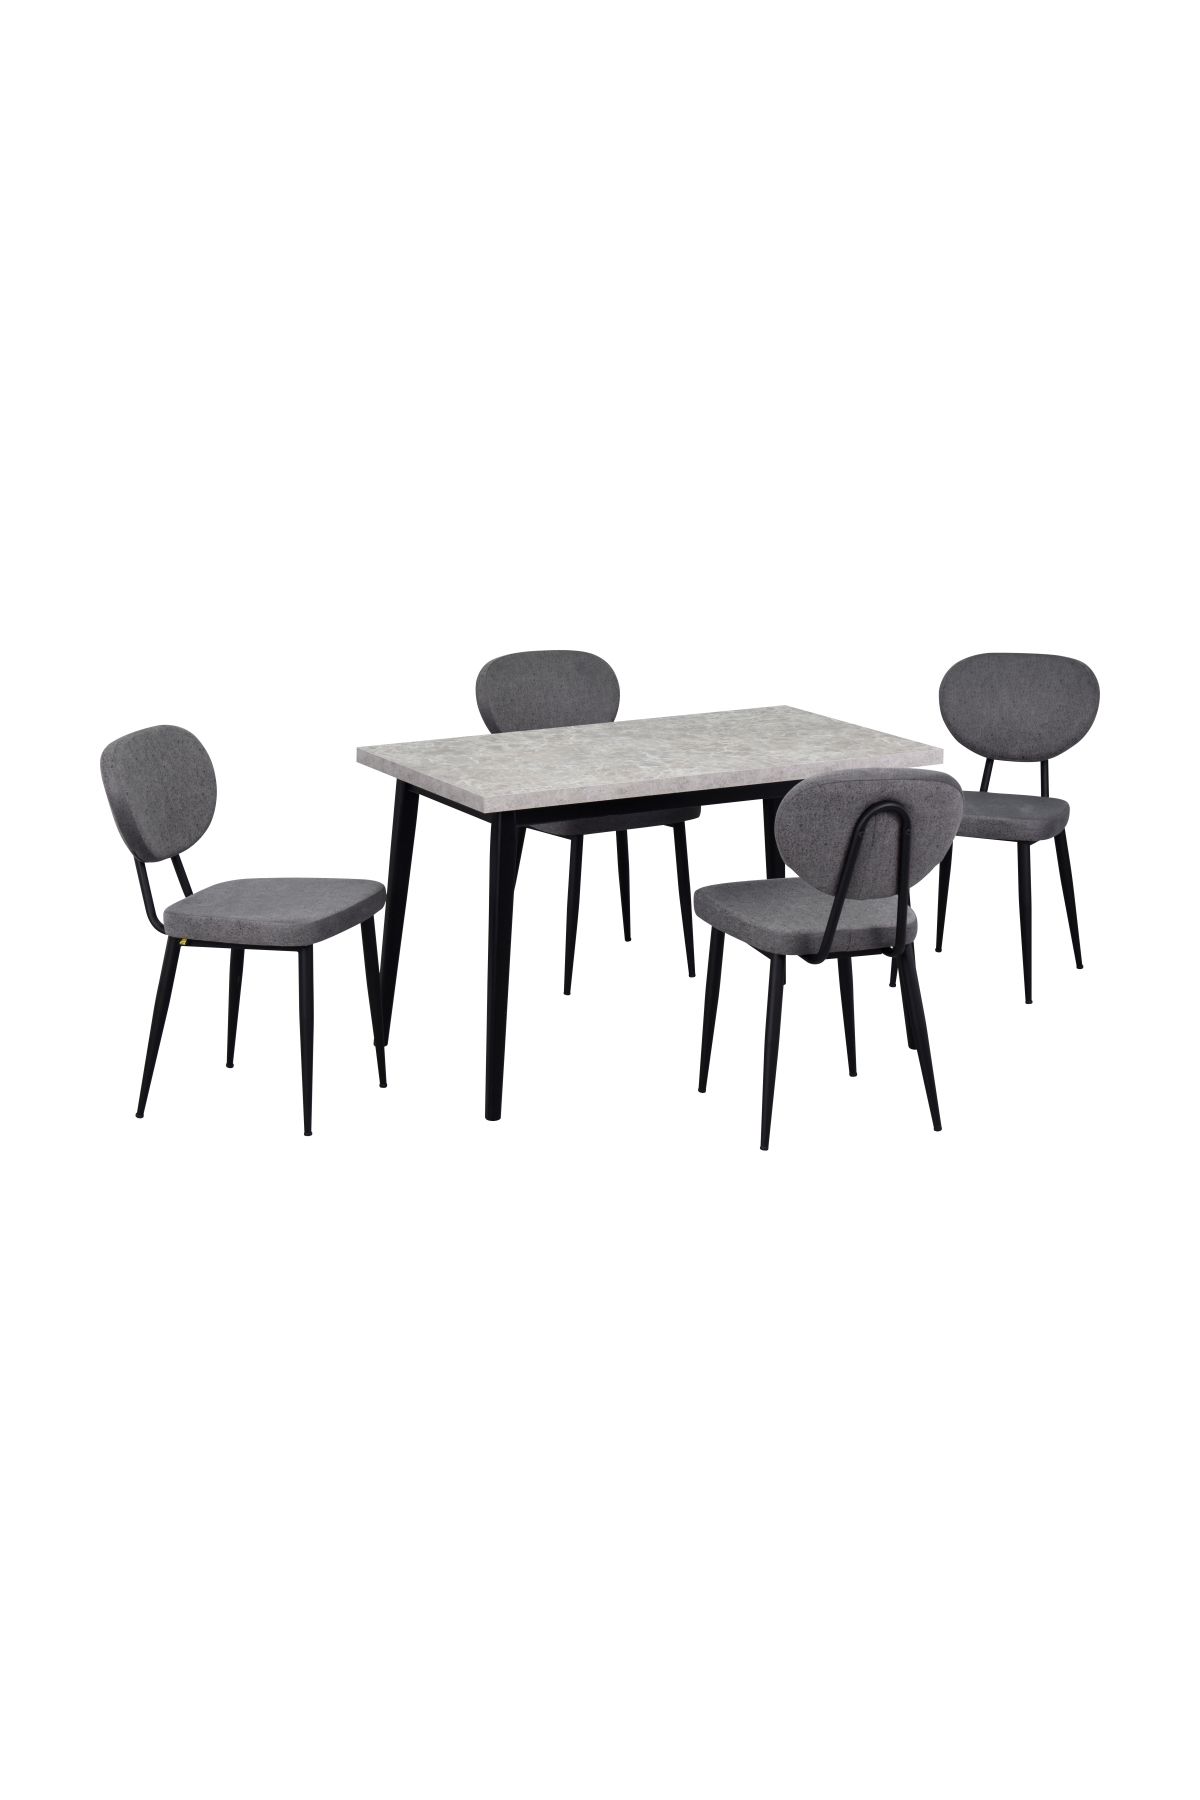 VİLİNZE Vilinze Deniz Metal Sandalye Avanos Ahşap MDF Mutfak Masası Takımı - 70x120 cm